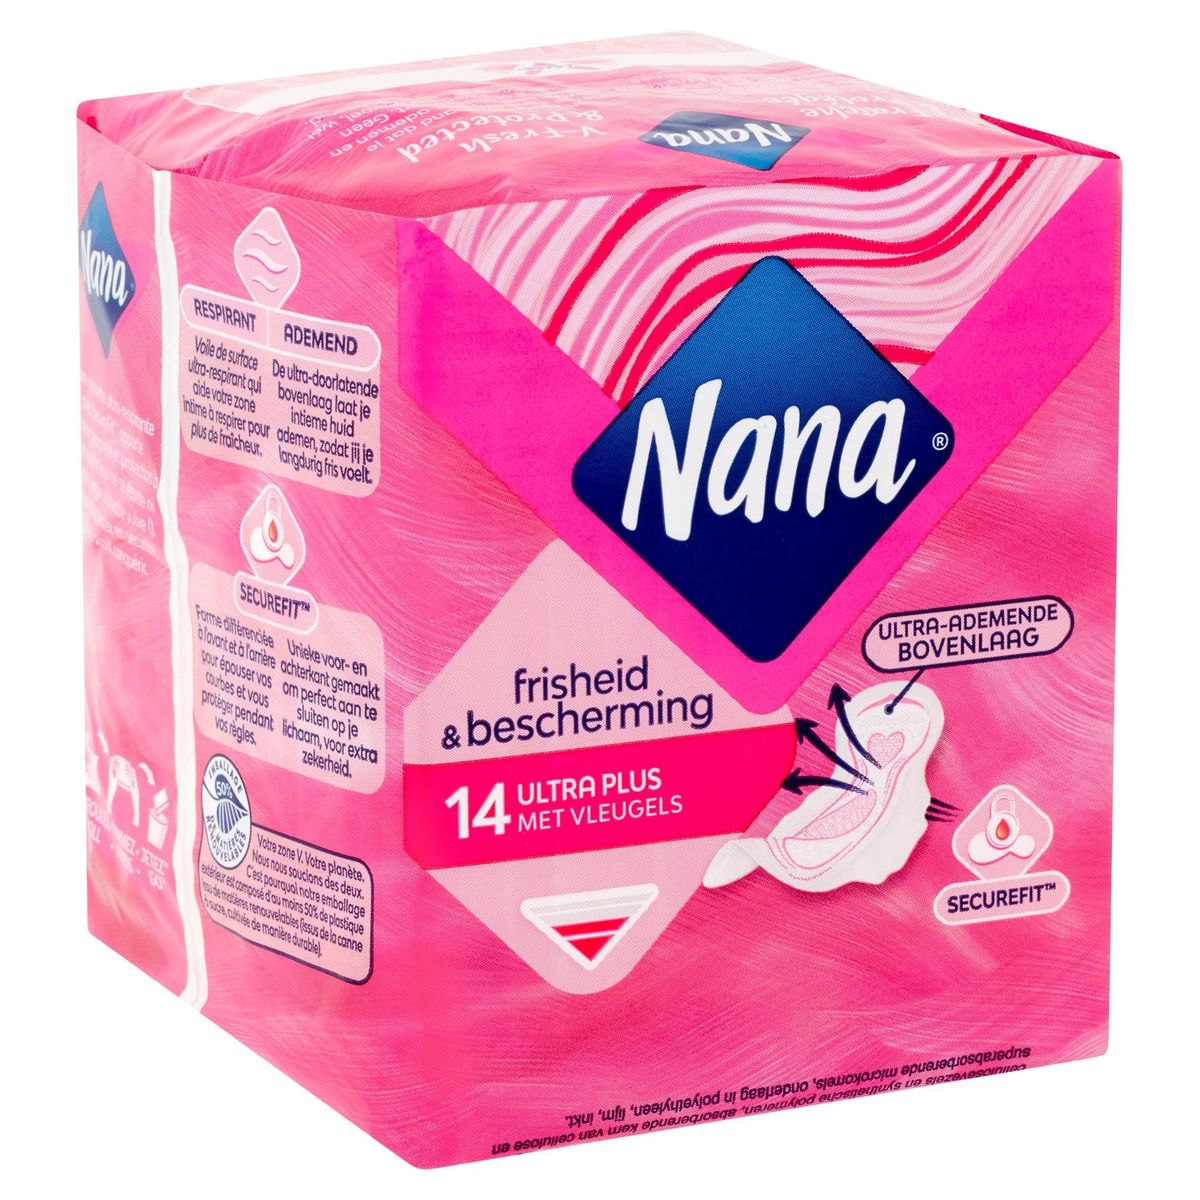 Nana Ultra Régulier / Normal Plus Serviette Hygiénique Ailettes 14 Pc